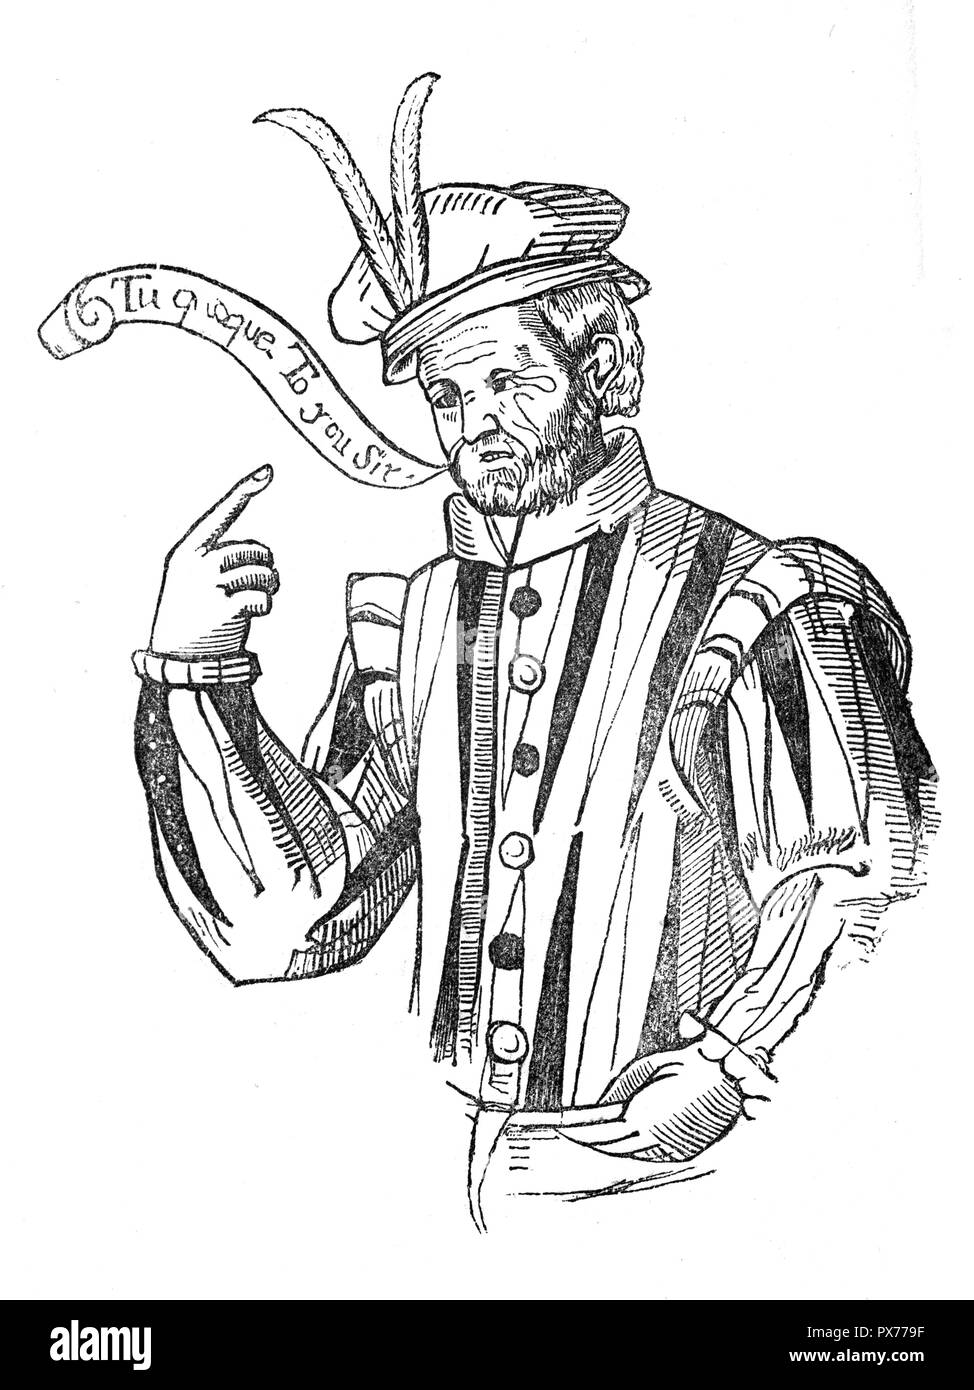 Robert Greene, (1558-1592, London), einem der beliebtesten englischen Schriftsteller des 16. Jahrhunderts und Shakespeares erfolgreichsten Vorgänger in Leer - Vers romantische Komödie. Er war auch einer der ersten professionellen Autoren und zu den frühesten englischen autobiographers Stockfoto